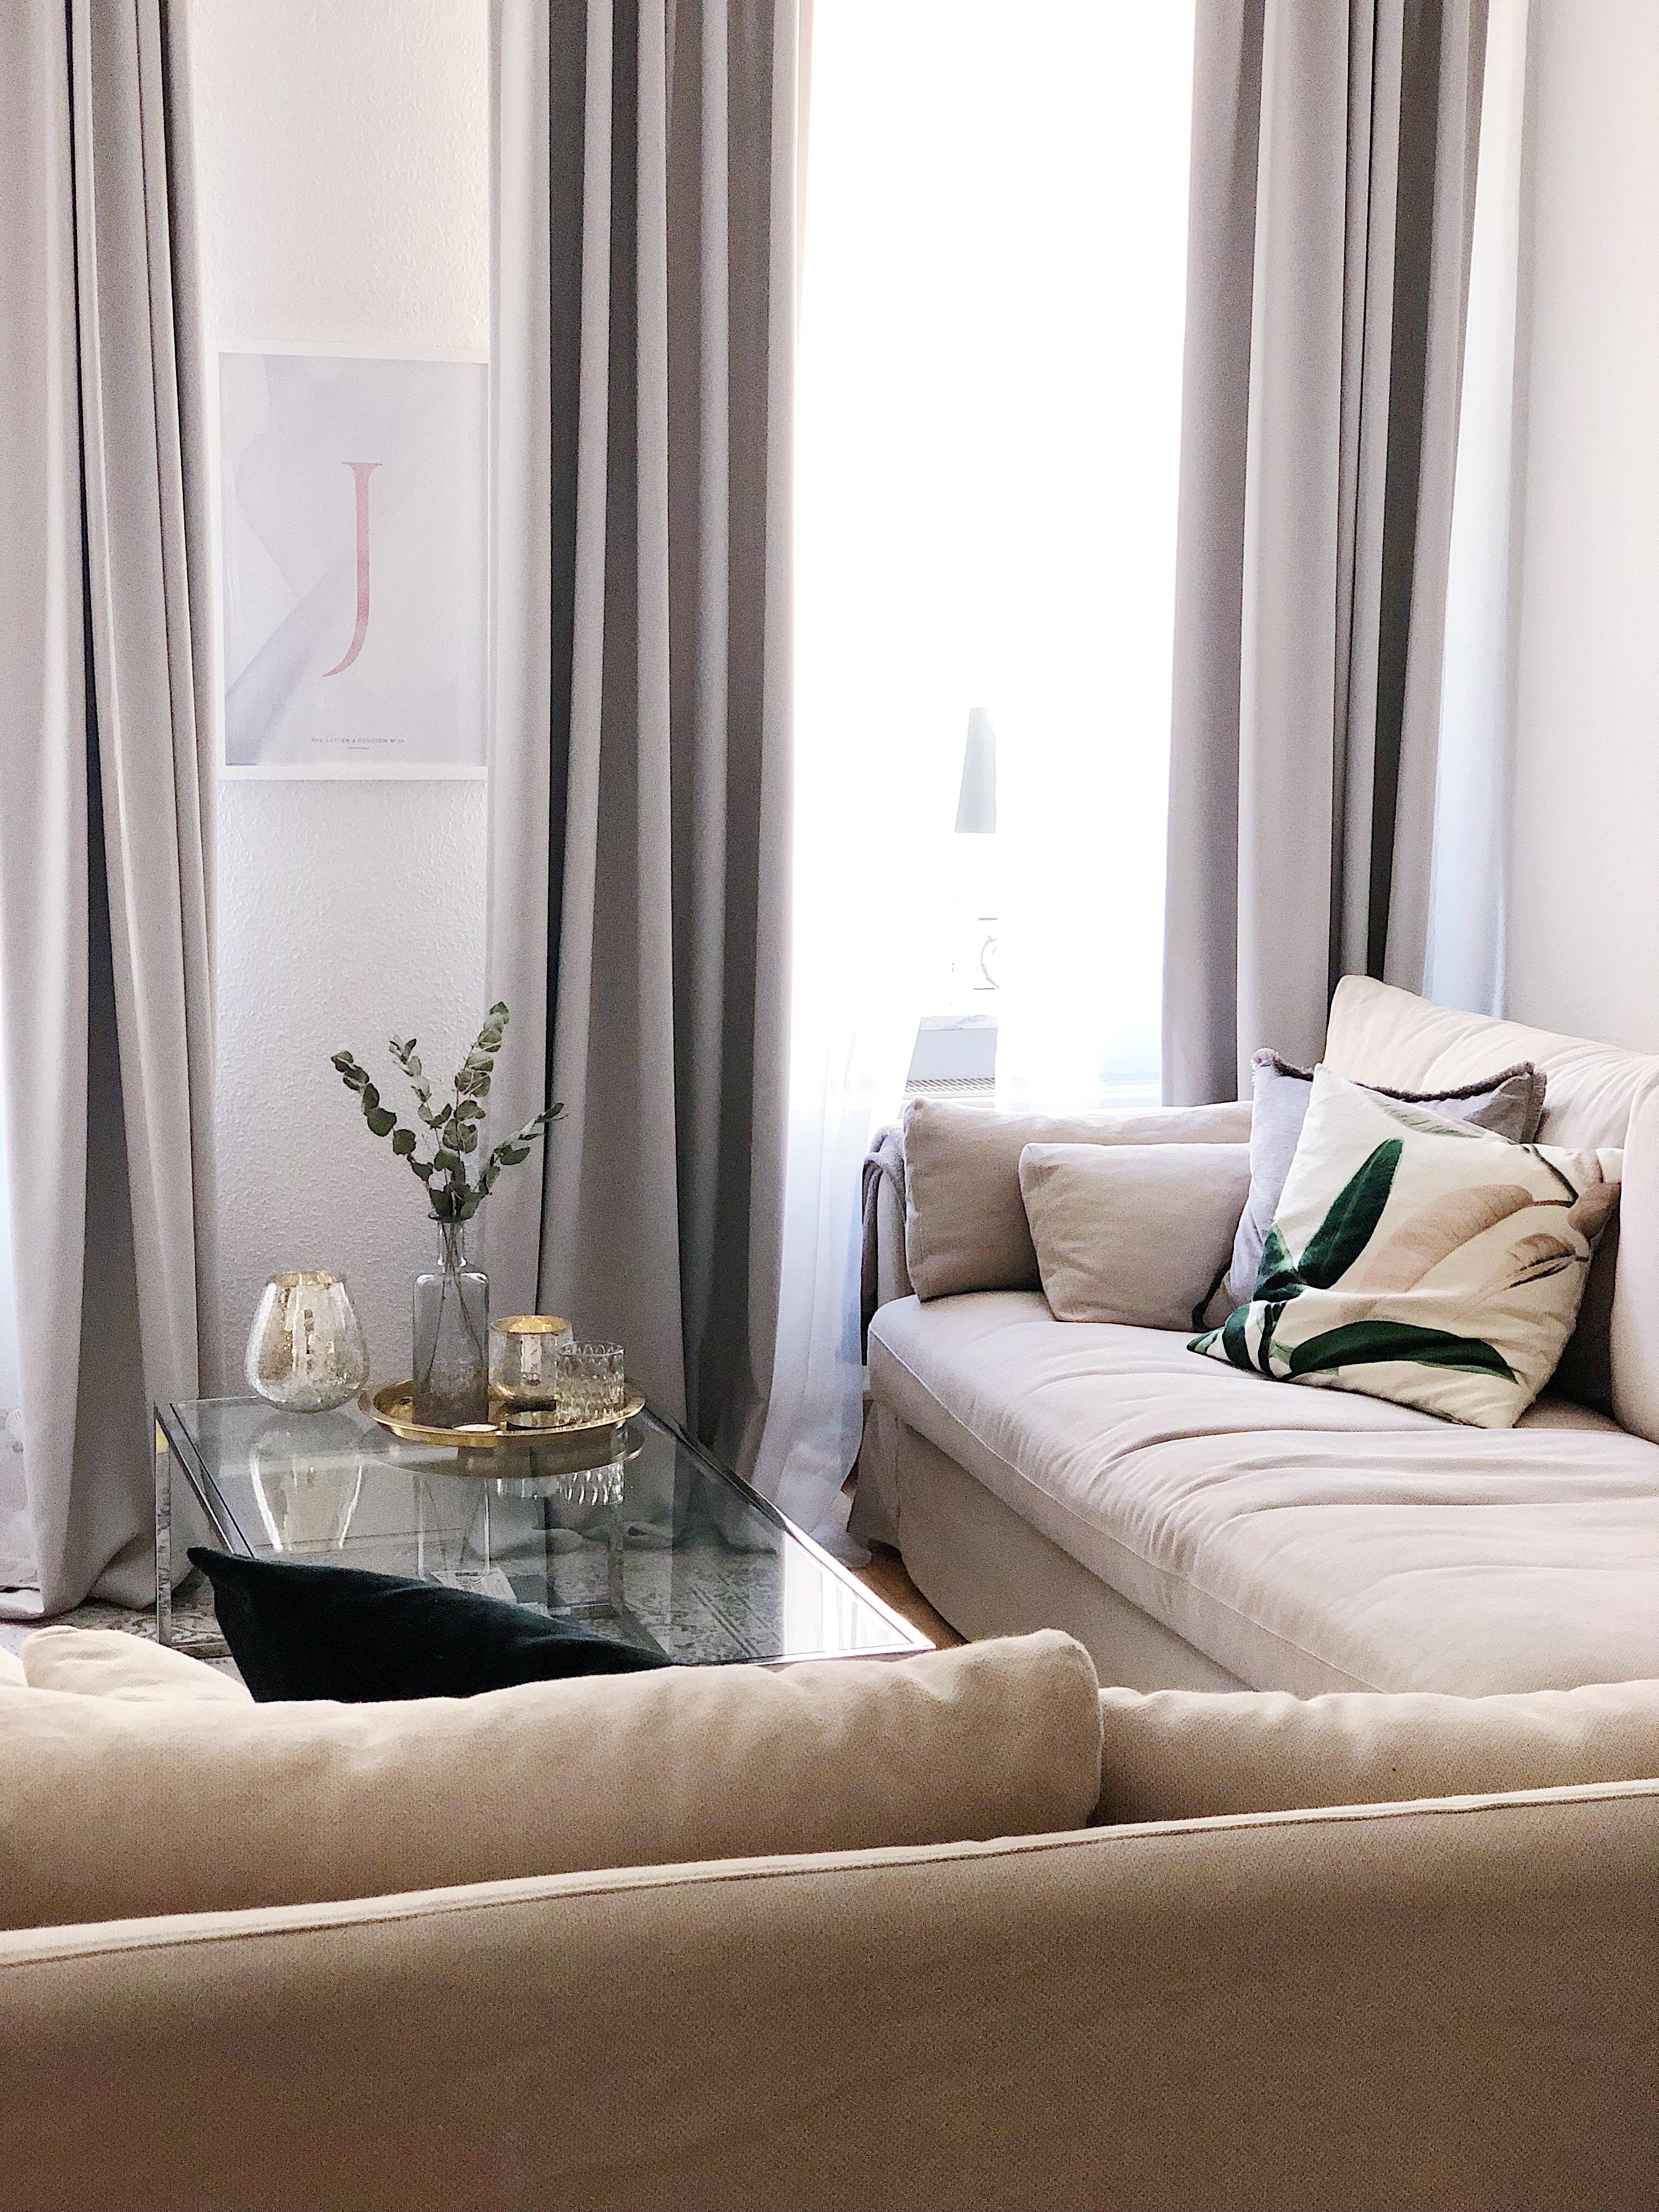 Mit großen Schritten Richtung Wochenende! #wohnzimmer #meinikea #cozyplace #interior #couch #livingroom #altbau